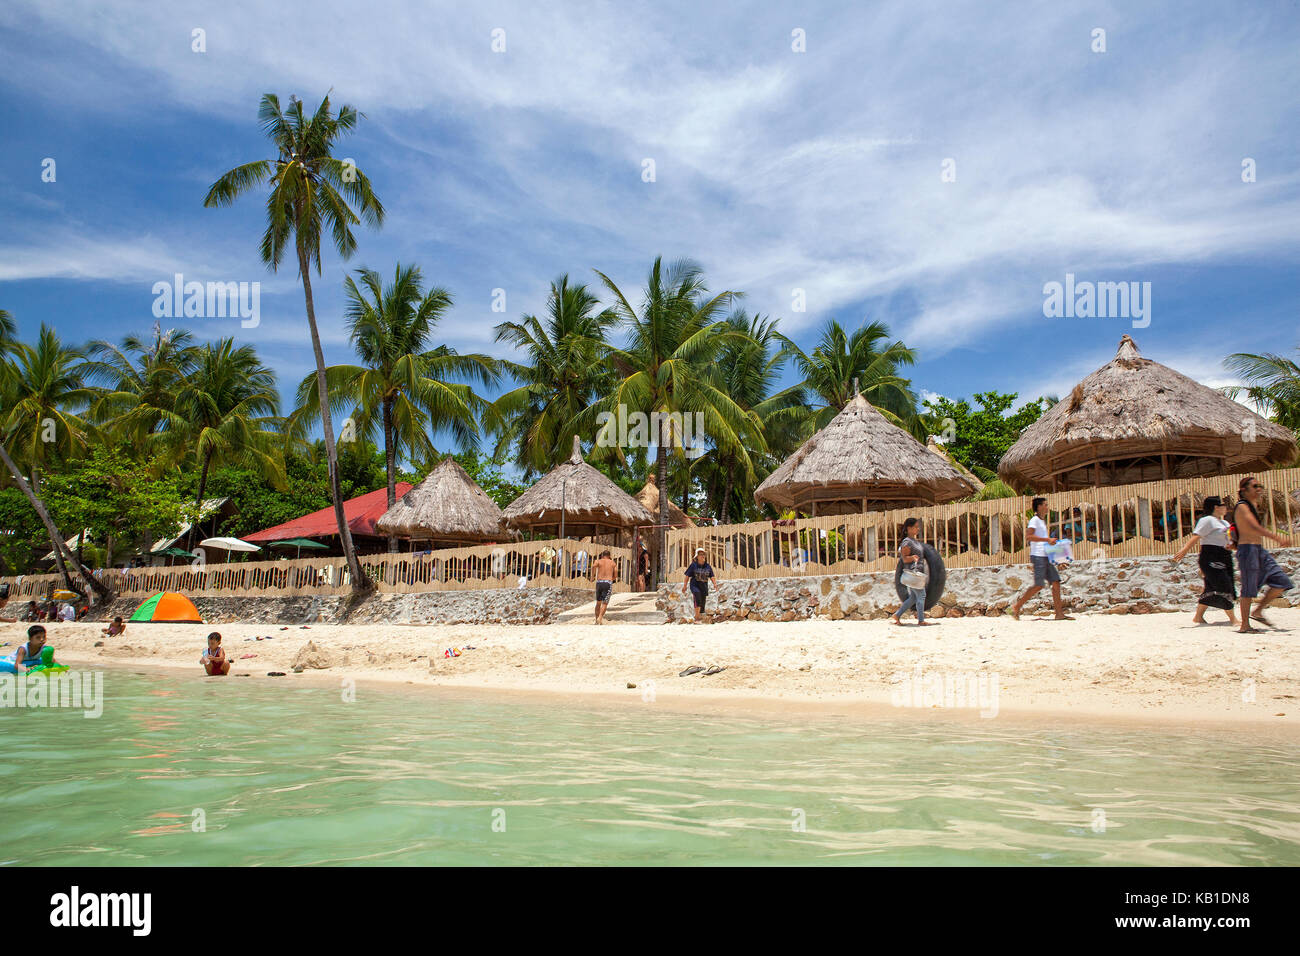 Les Sud-asiatiques philippins en vacances à la plage à Raymond Resort sur l'île de Guimaras, Philippines. Banque D'Images